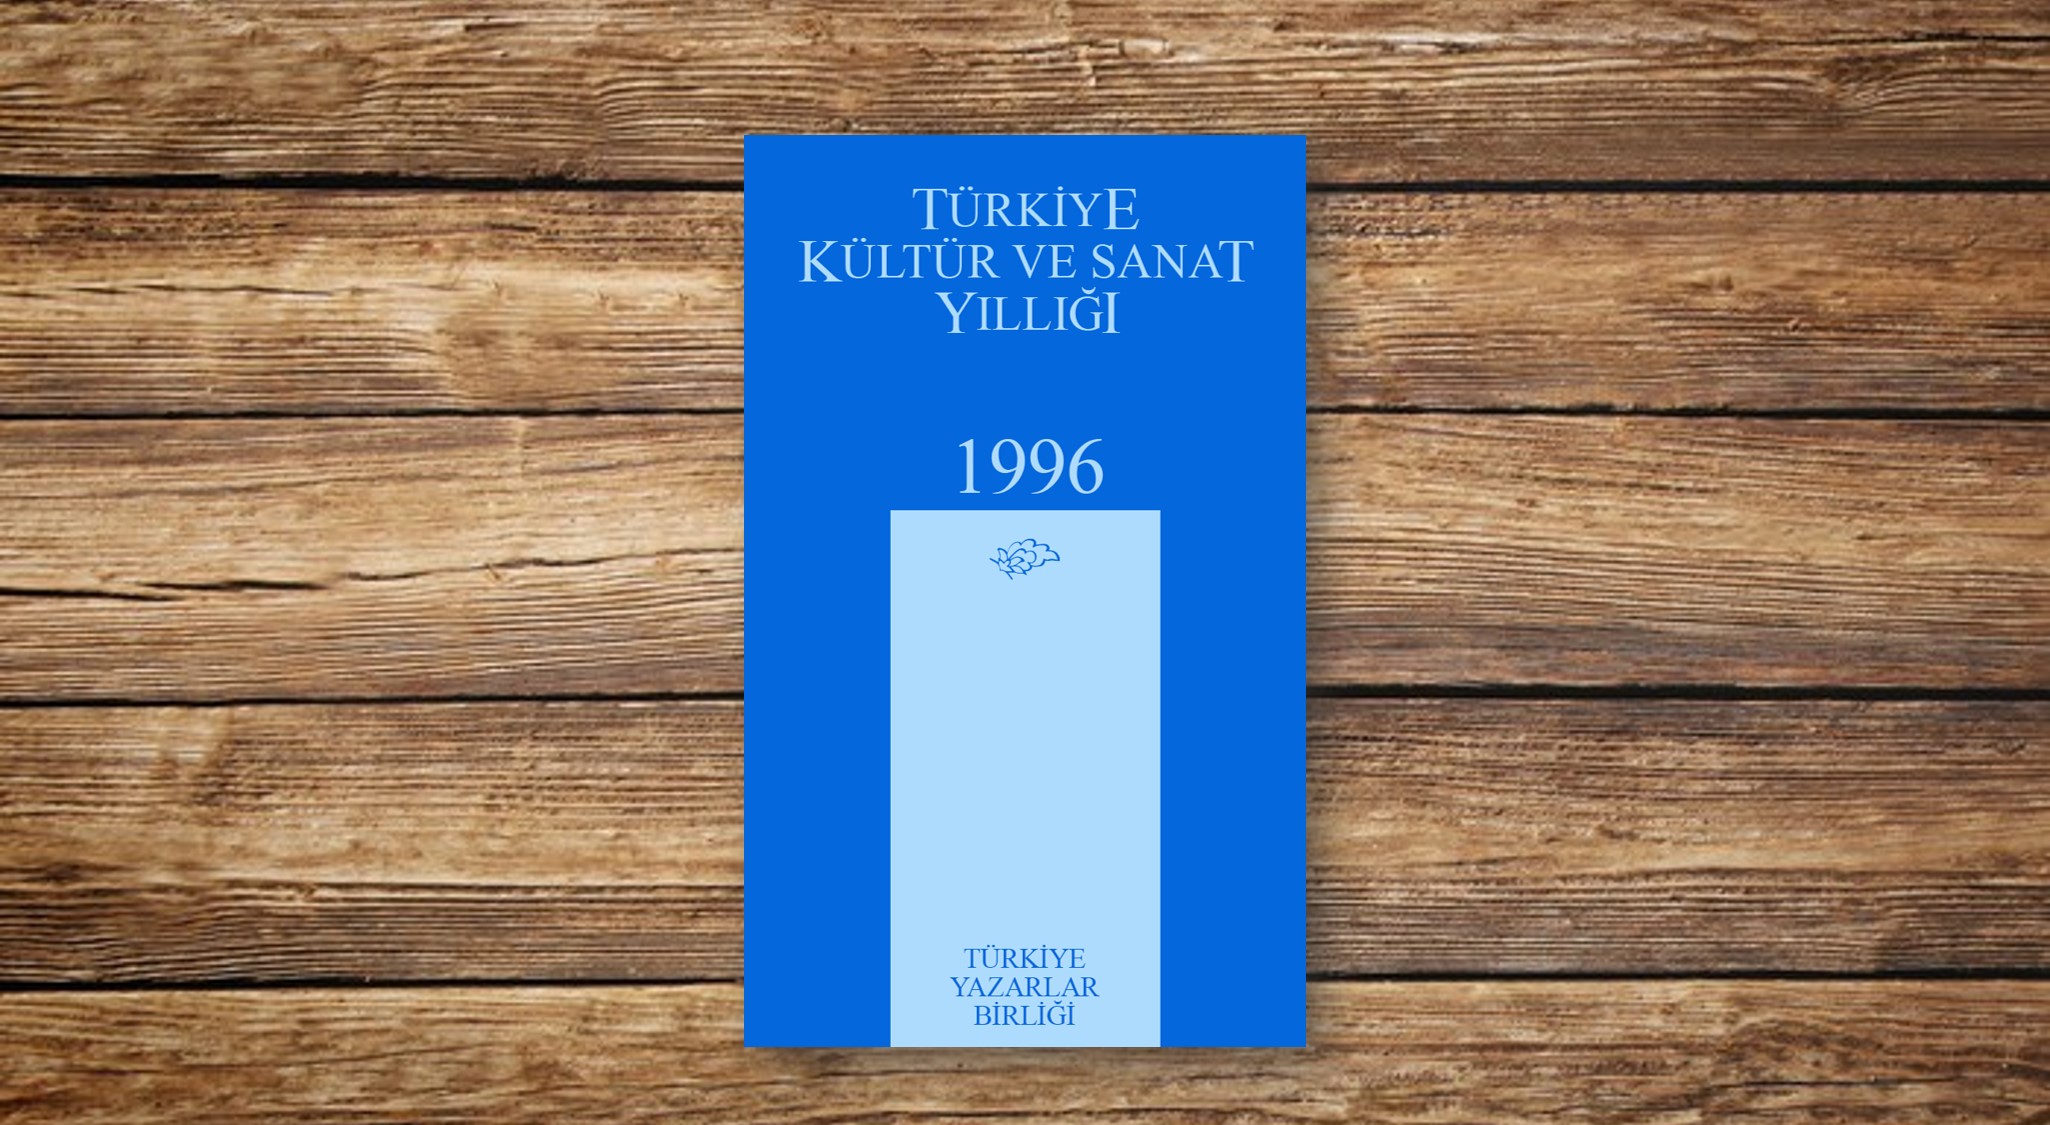 Türkiye Kültür ve Sanat Yıllığı 1996